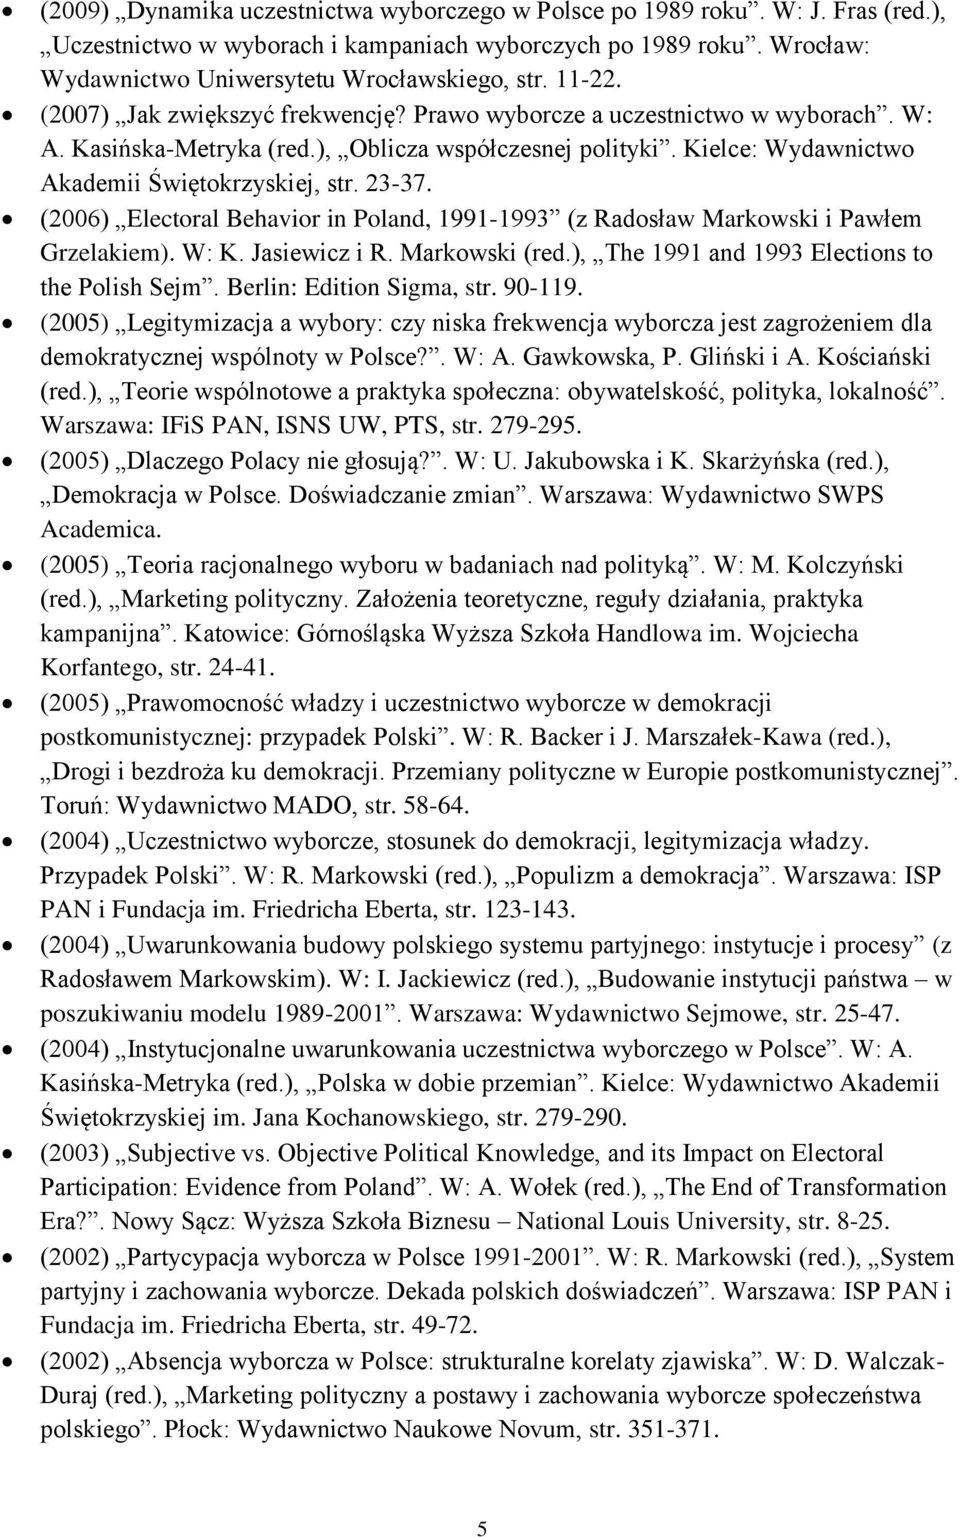 23-37. (2006) Electoral Behavior in Poland, 1991-1993 (z Radosław Markowski i Pawłem Grzelakiem). W: K. Jasiewicz i R. Markowski (red.), The 1991 and 1993 Elections to the Polish Sejm.